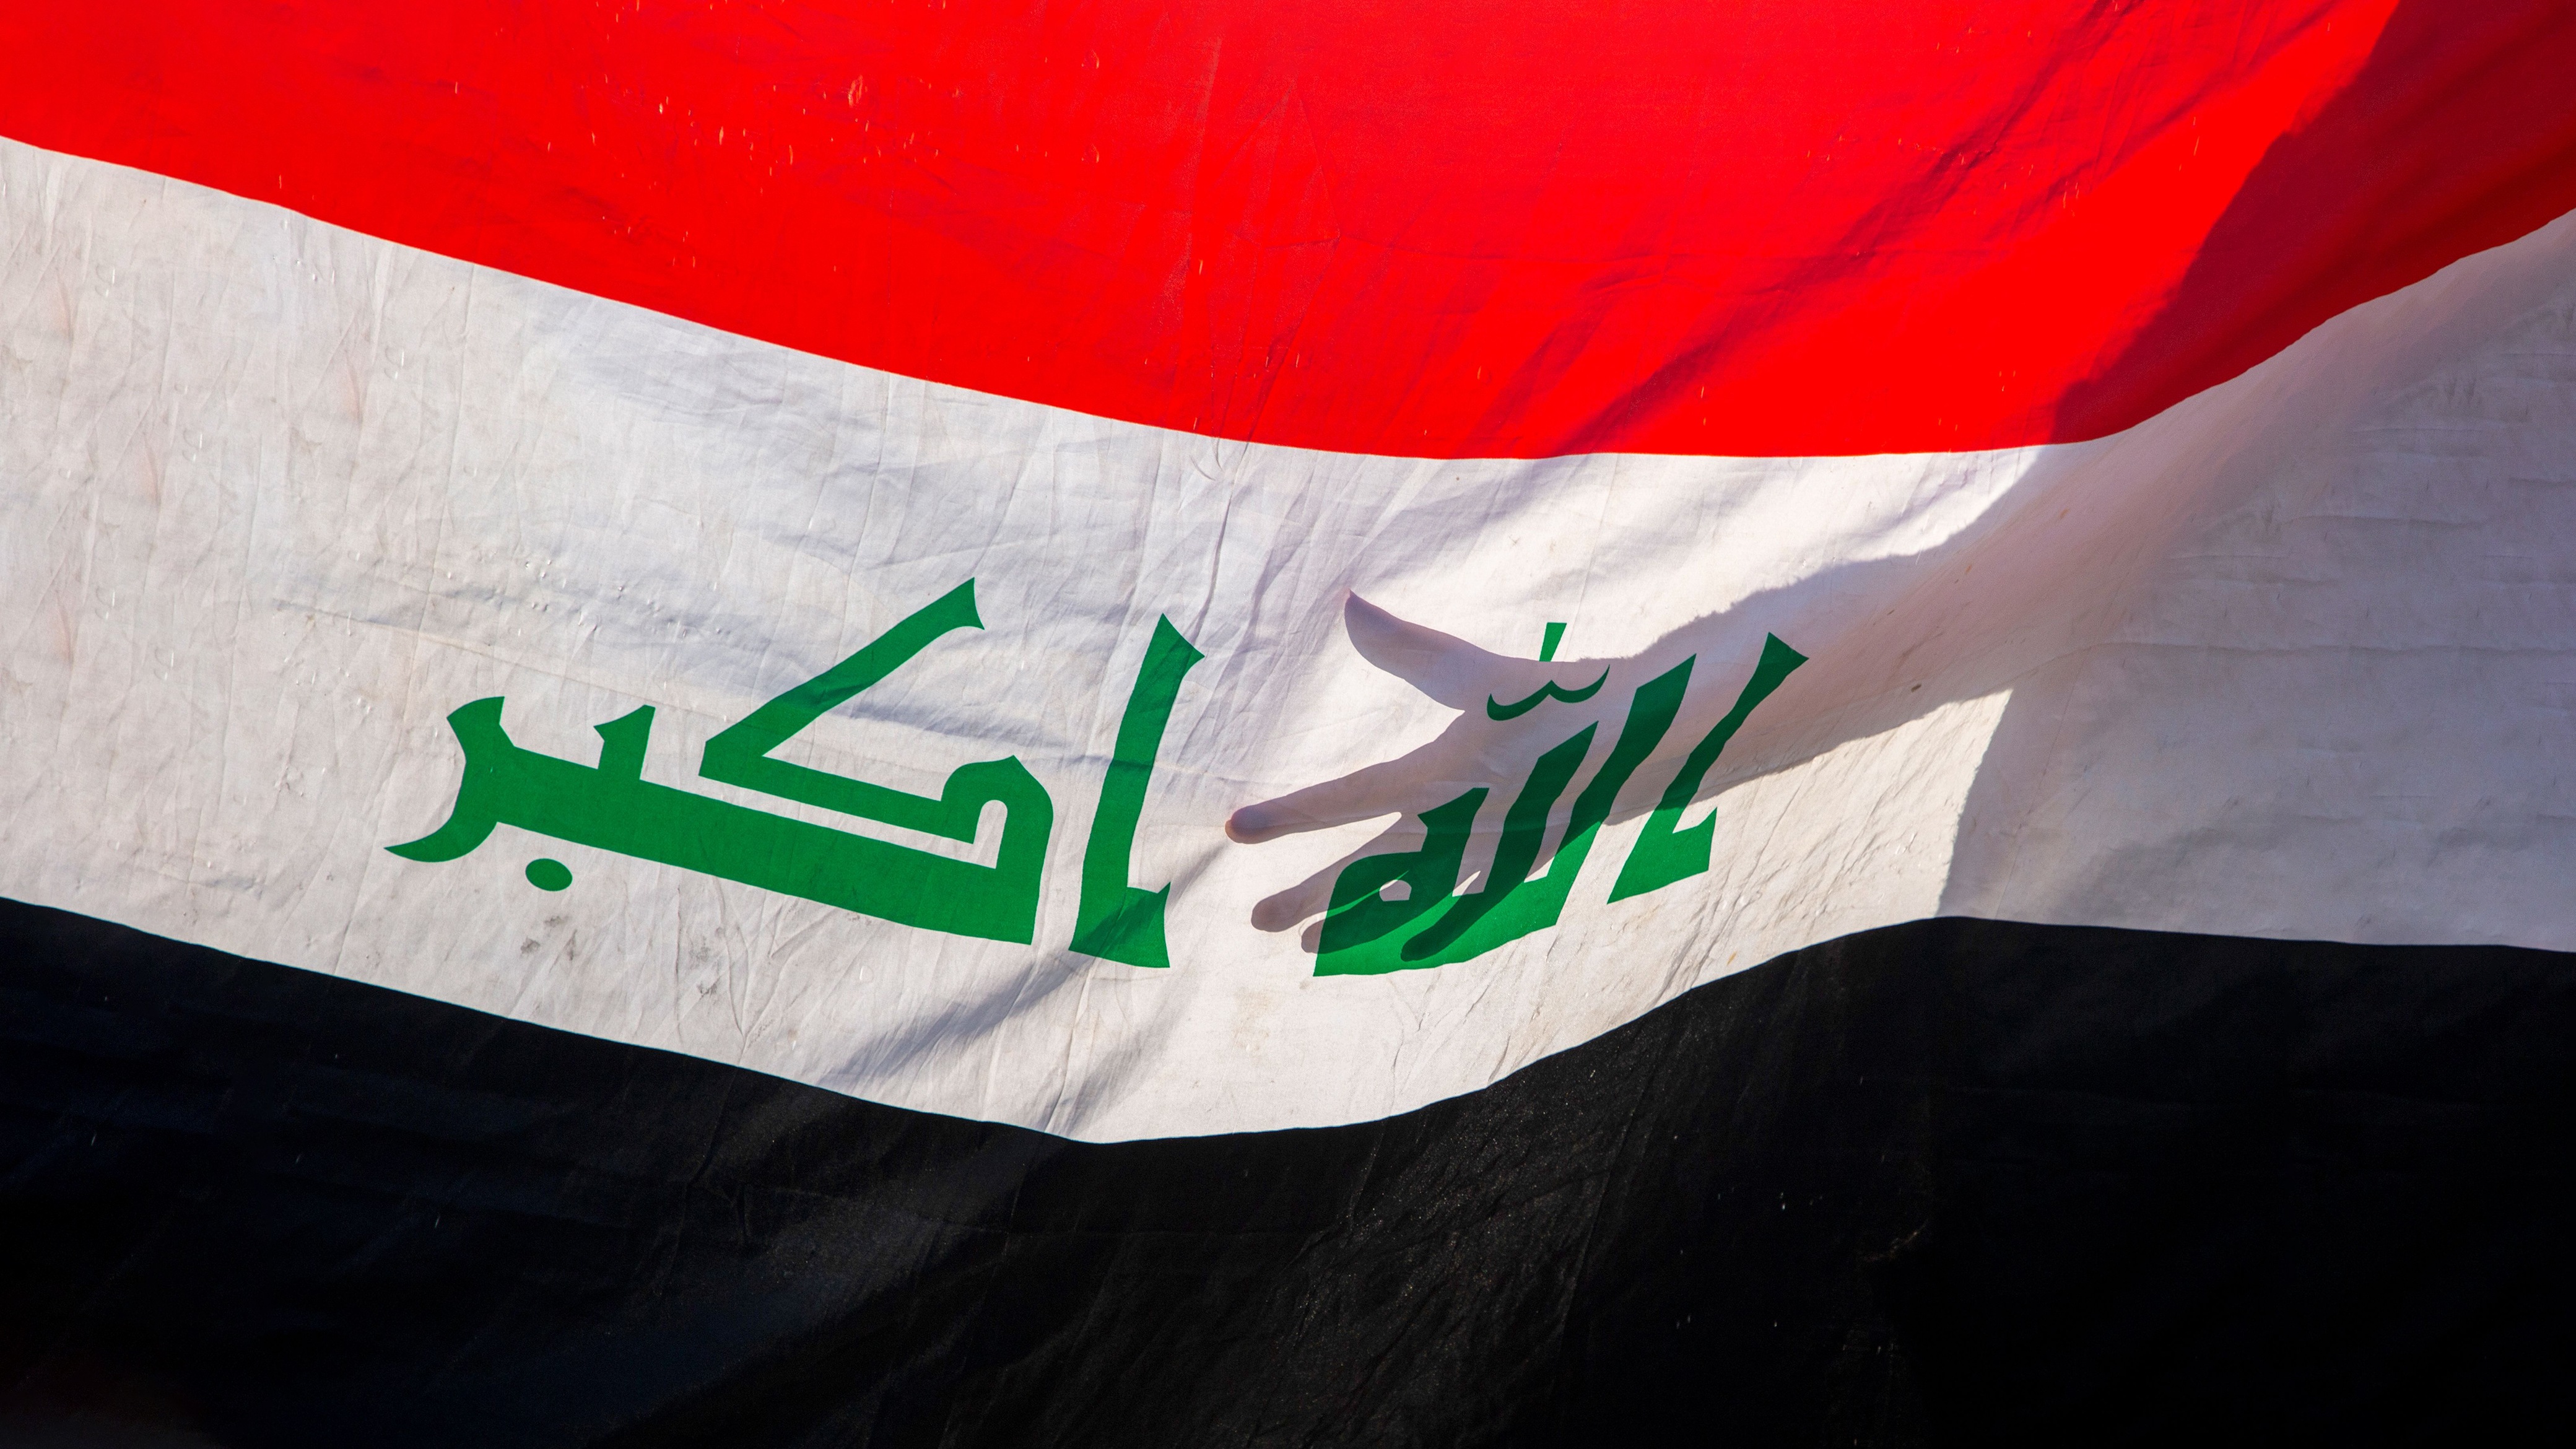 الإشكالية السياسية التي عانى منها العراق على امتداد القرن الأخير تتمثل بإعطاء الدولة أيديولوجيا السلطة الحاكمة